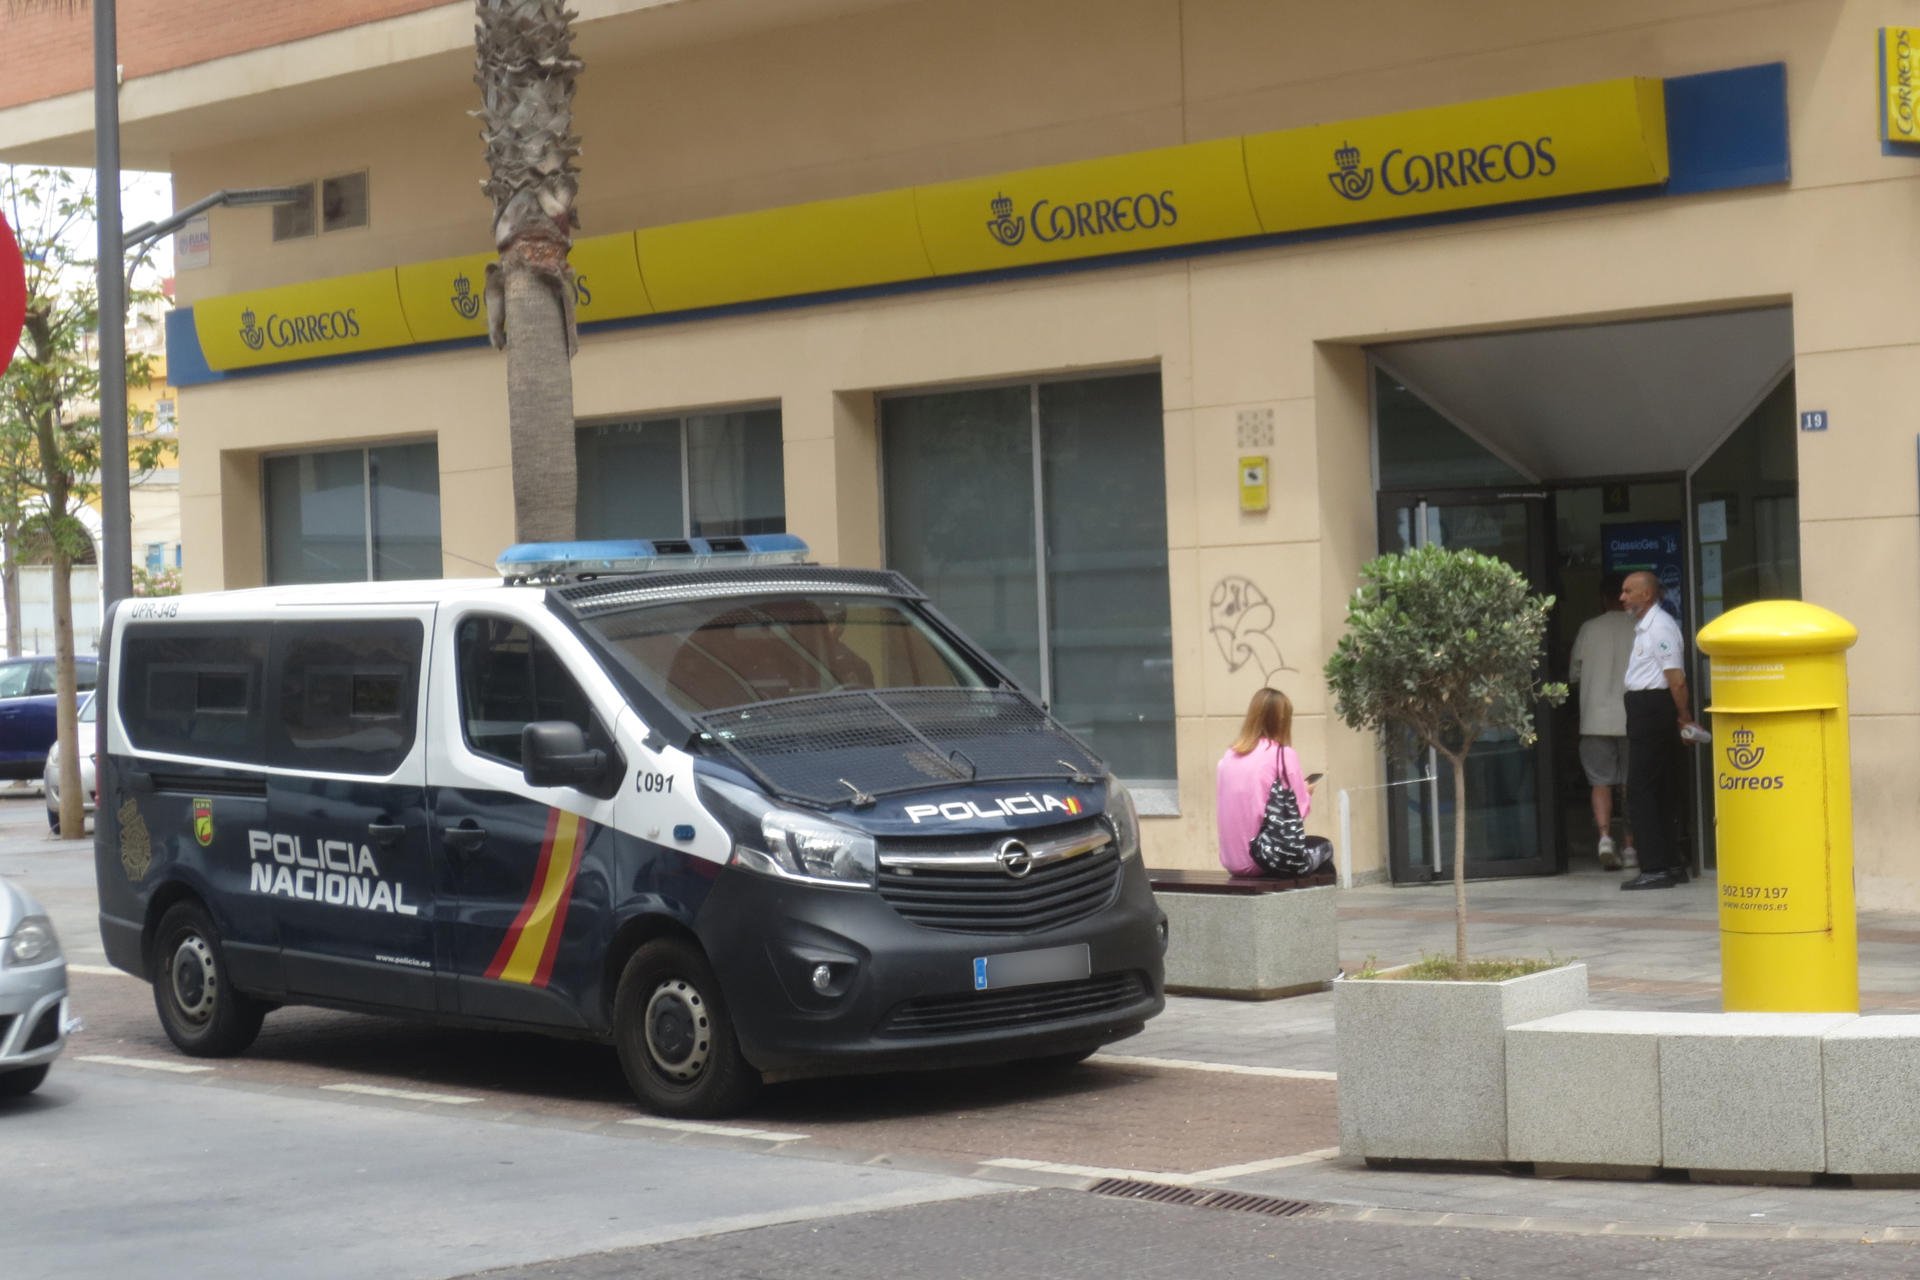 Els votants per correu a Melilla hauran d'entregar el vot personalment i amb DNI per evitar un frau